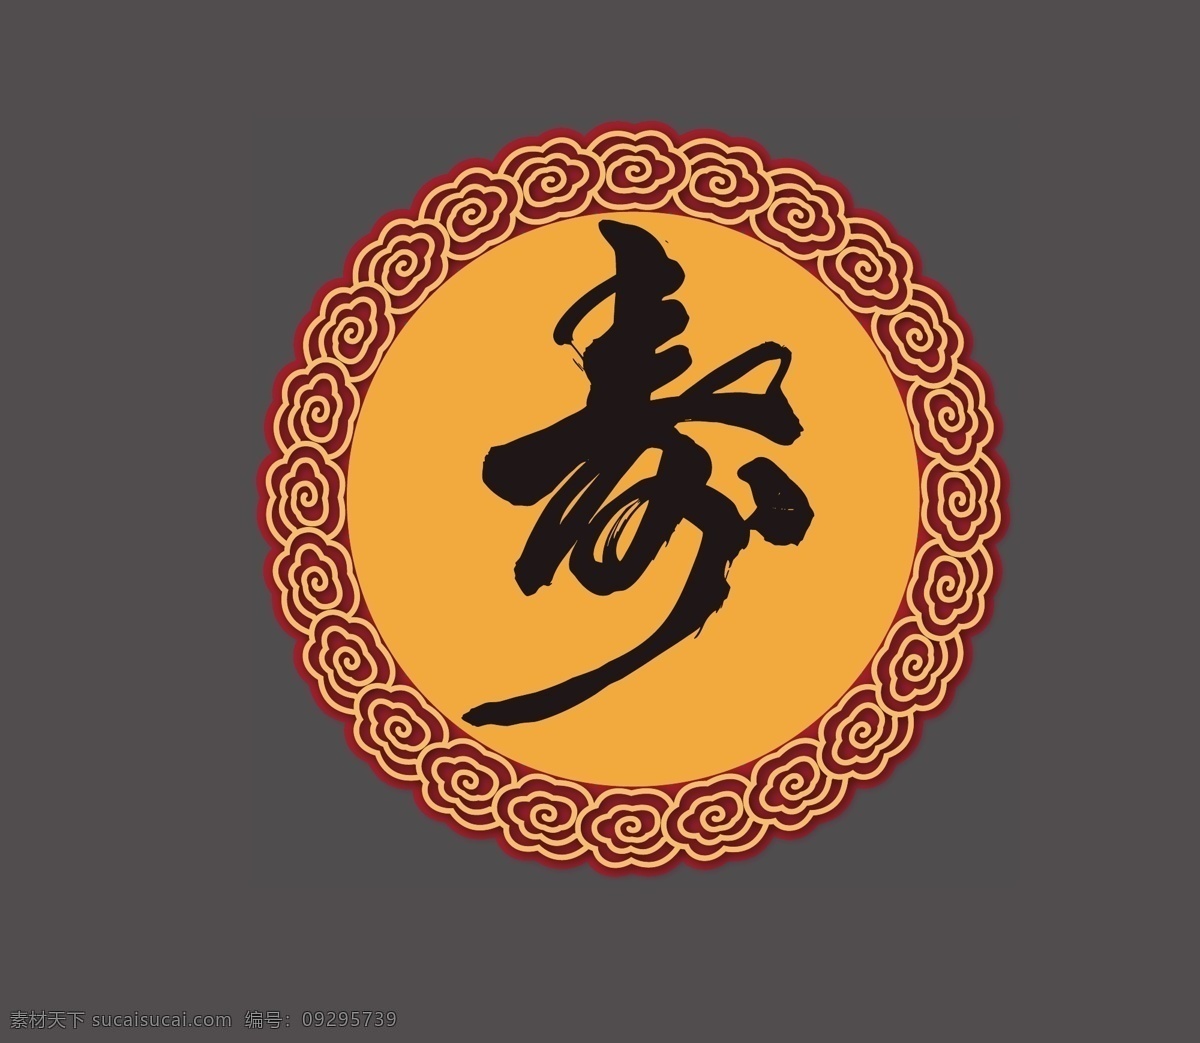 中式花纹 寿图 矢量图 高清文件 中国风 婚礼logo